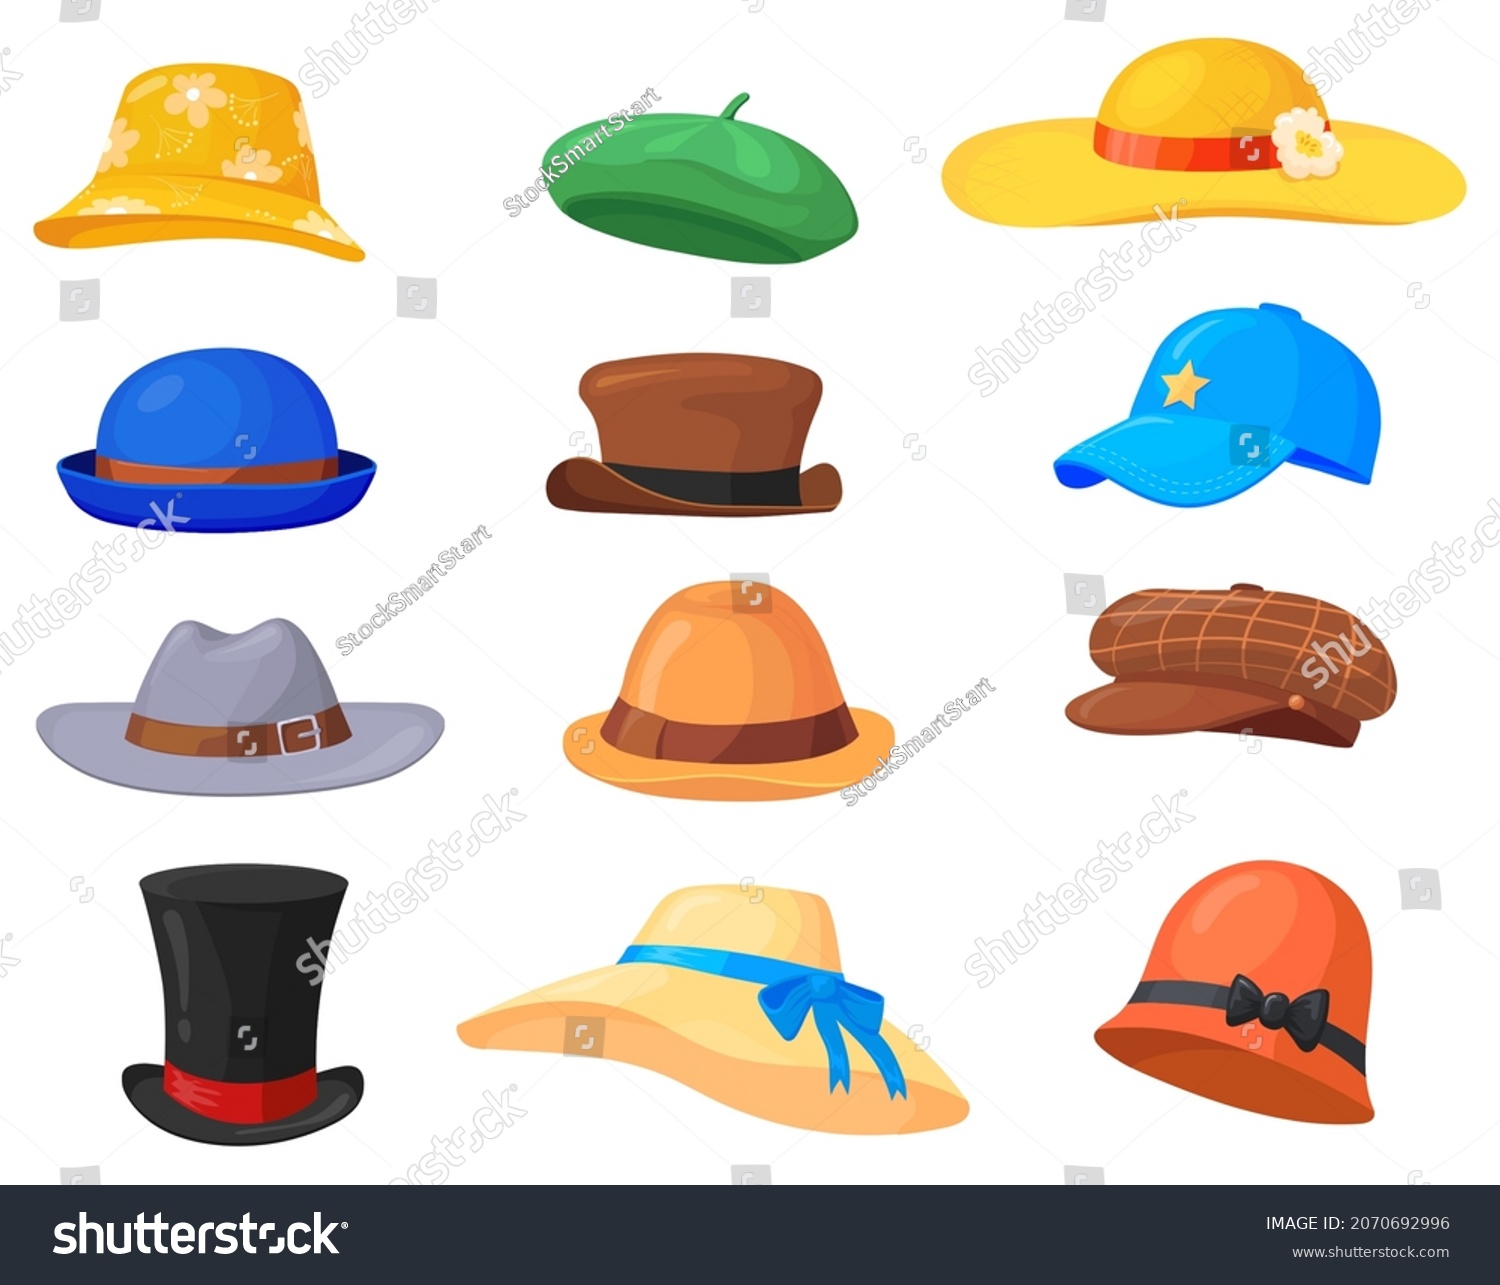 Cartoon Headgears Hats Fashion Clothes Man Stock Vector (Royalty Free ...